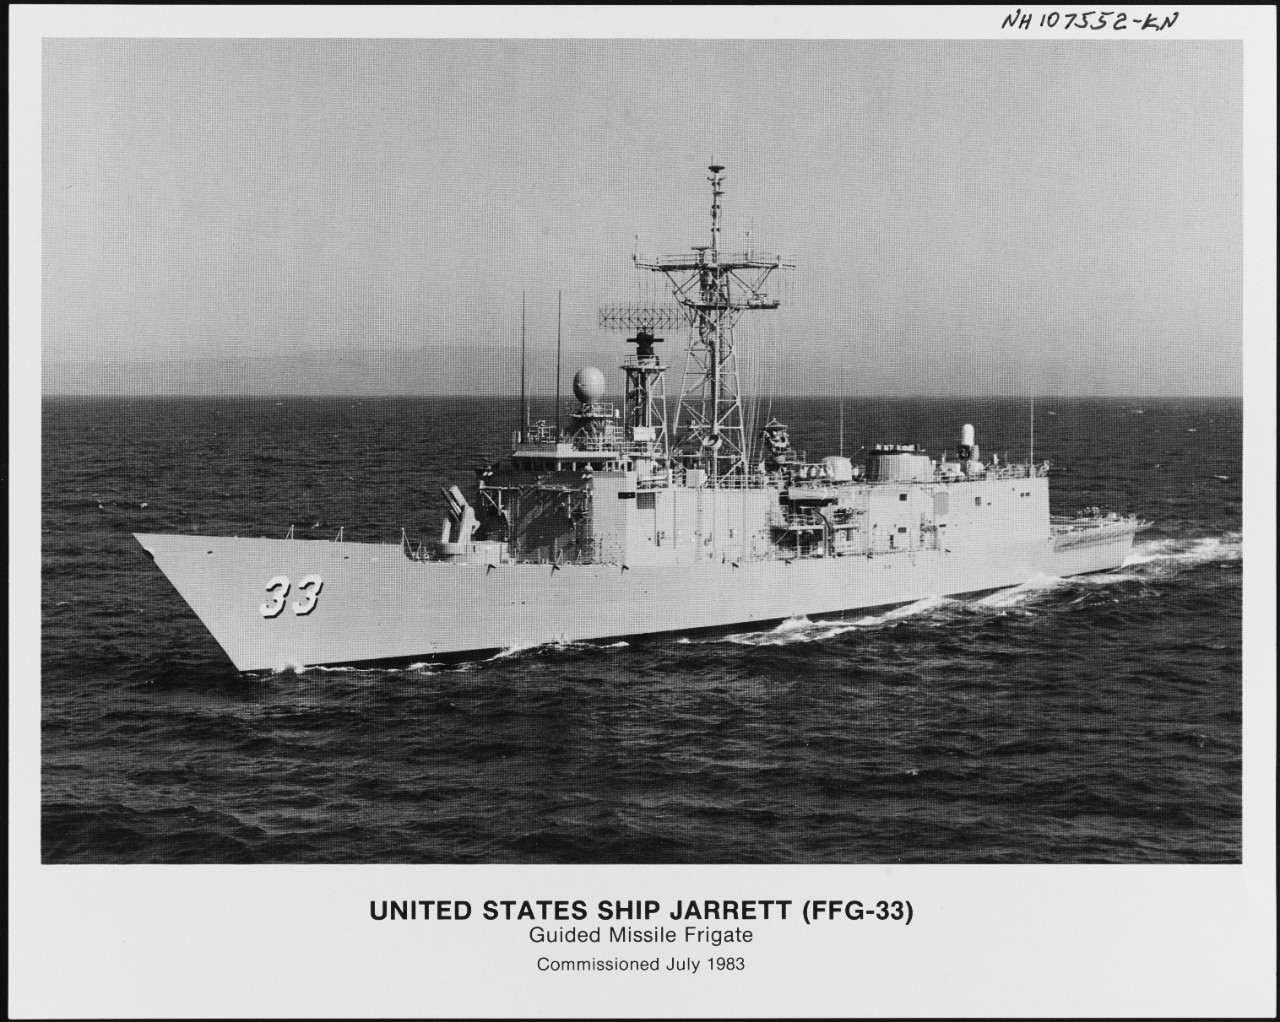 Photo #: NH 107552-KN USS Jarrett